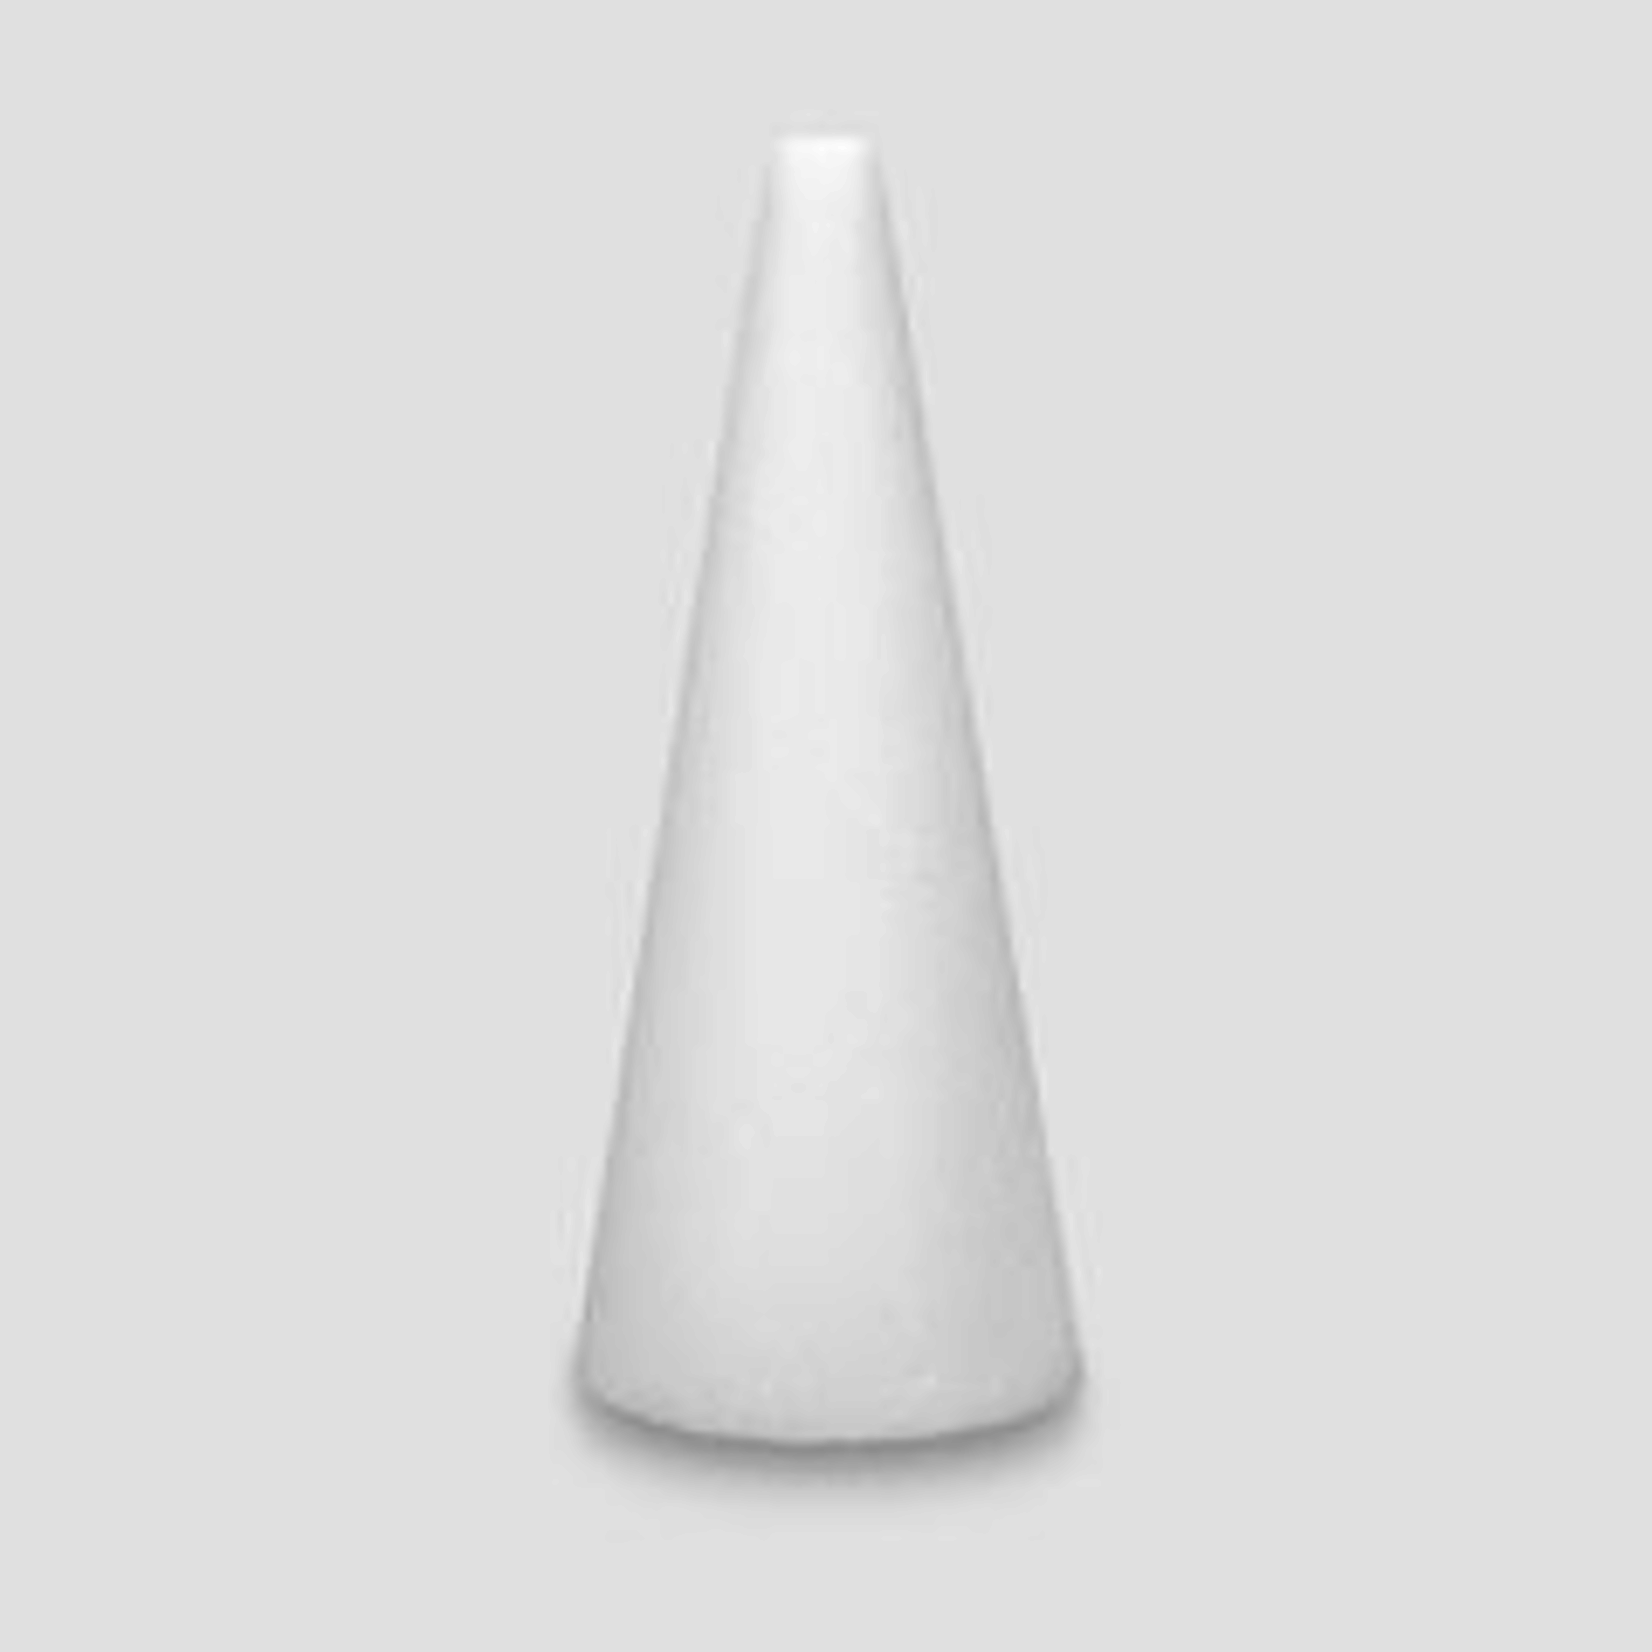 24x6""  White STYROFOAM Cone